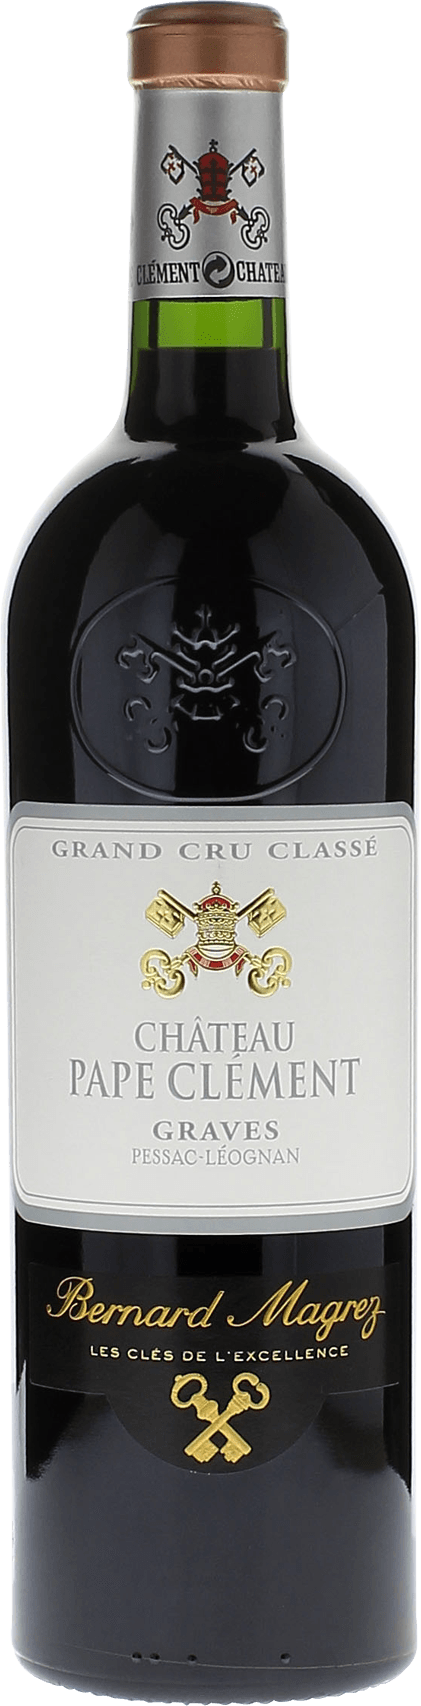 Pape clement rouge 1992 Grand Cru Class Graves, Bordeaux rouge